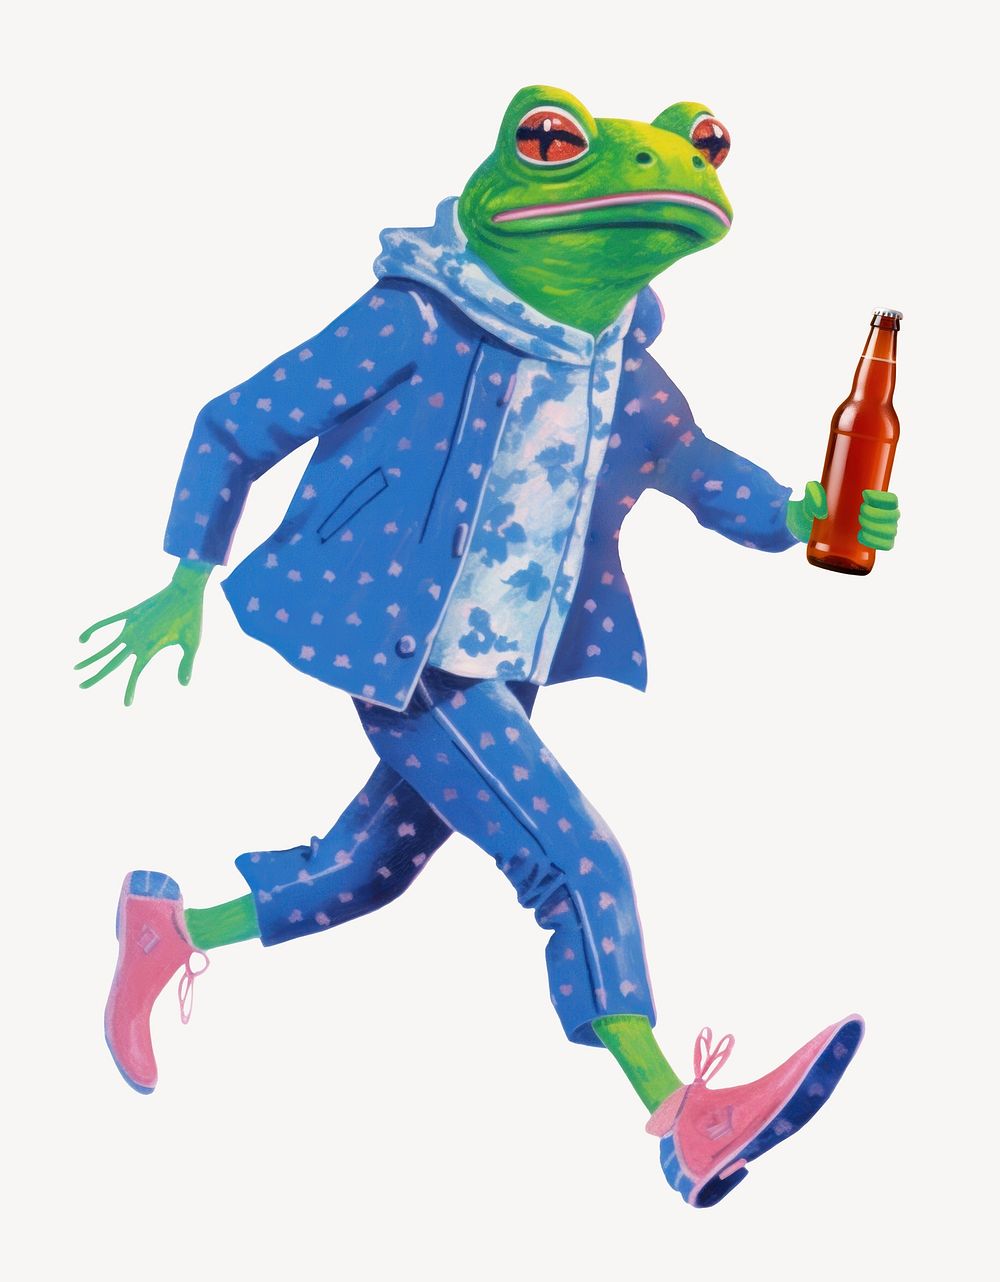 Frog character holding beer bottle digital art illustration